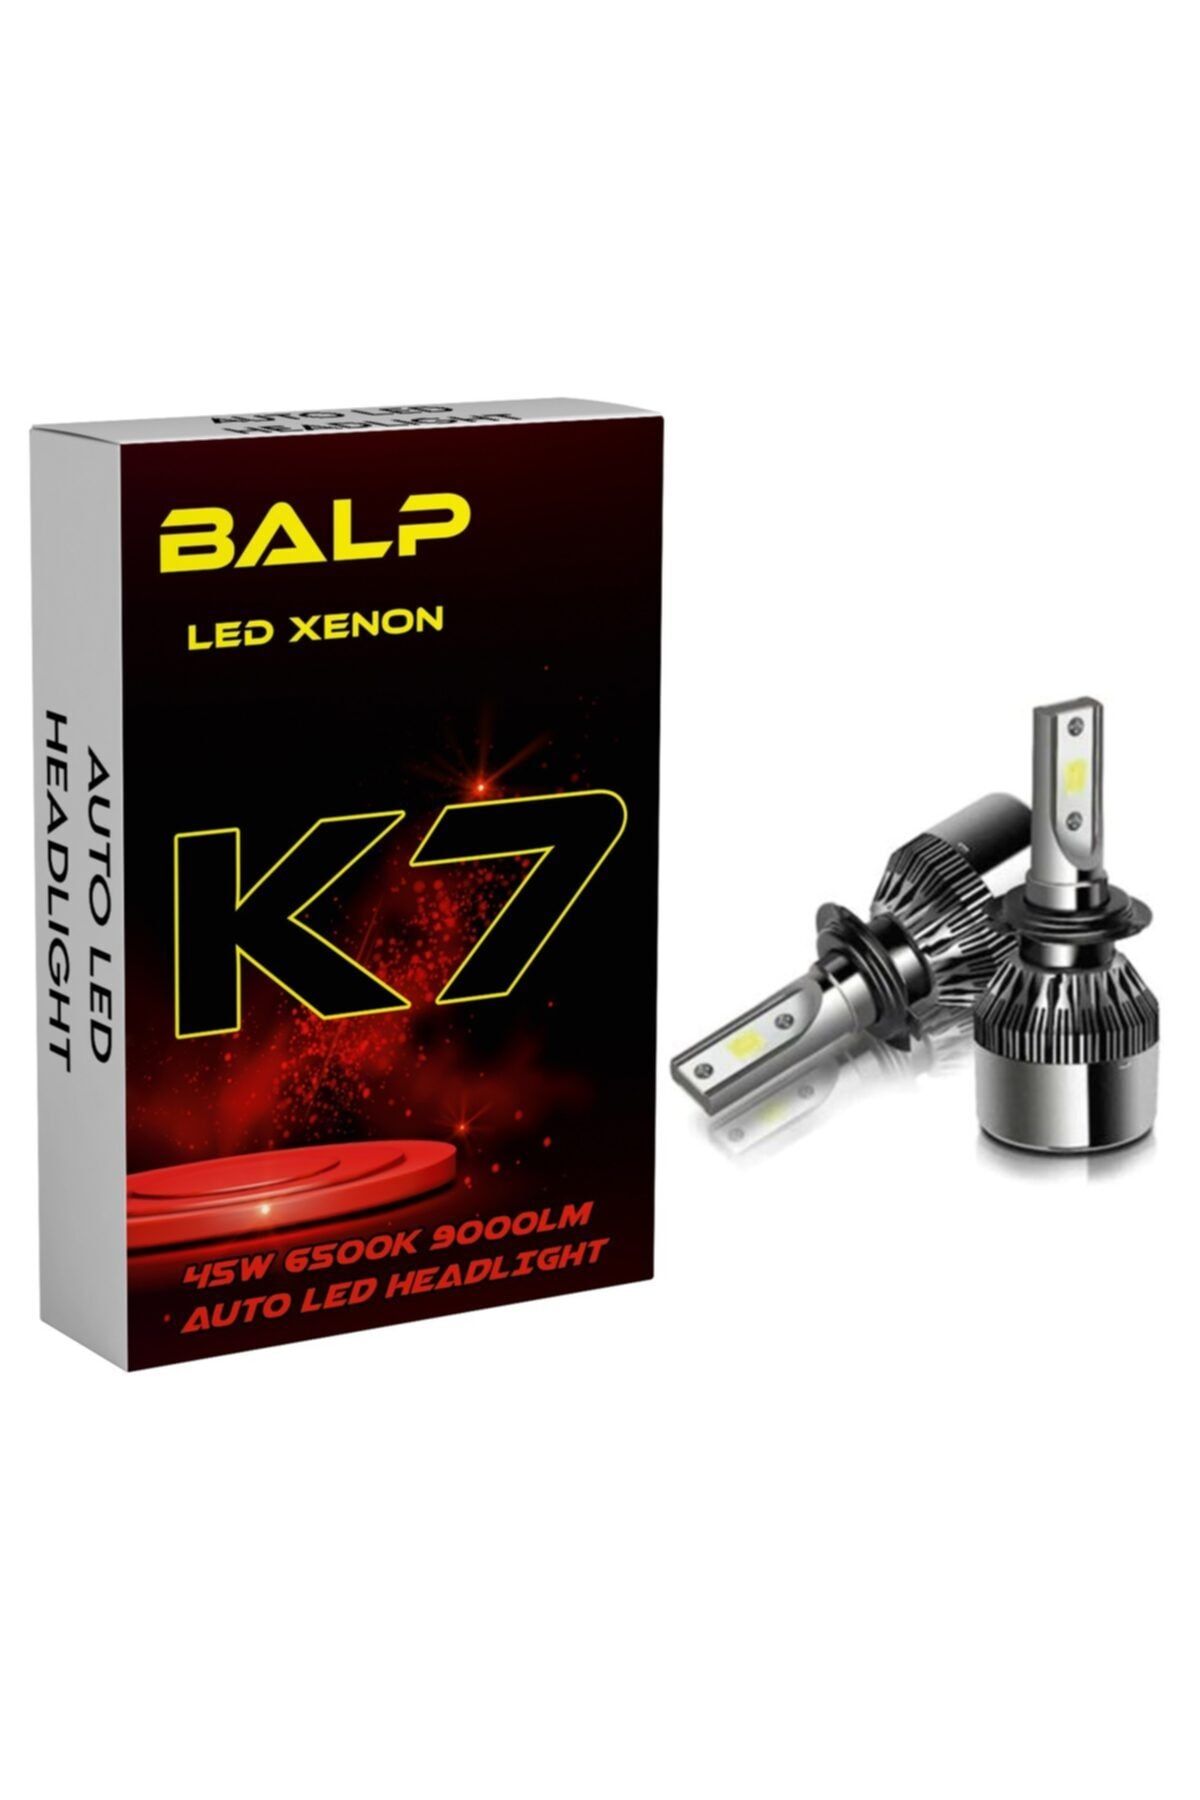 BALP H1 Led Xenon 2x Led Xenon 45w 9000lm 6500k Far Ampülü Led Zenon Şimşek Etkili K7-xen